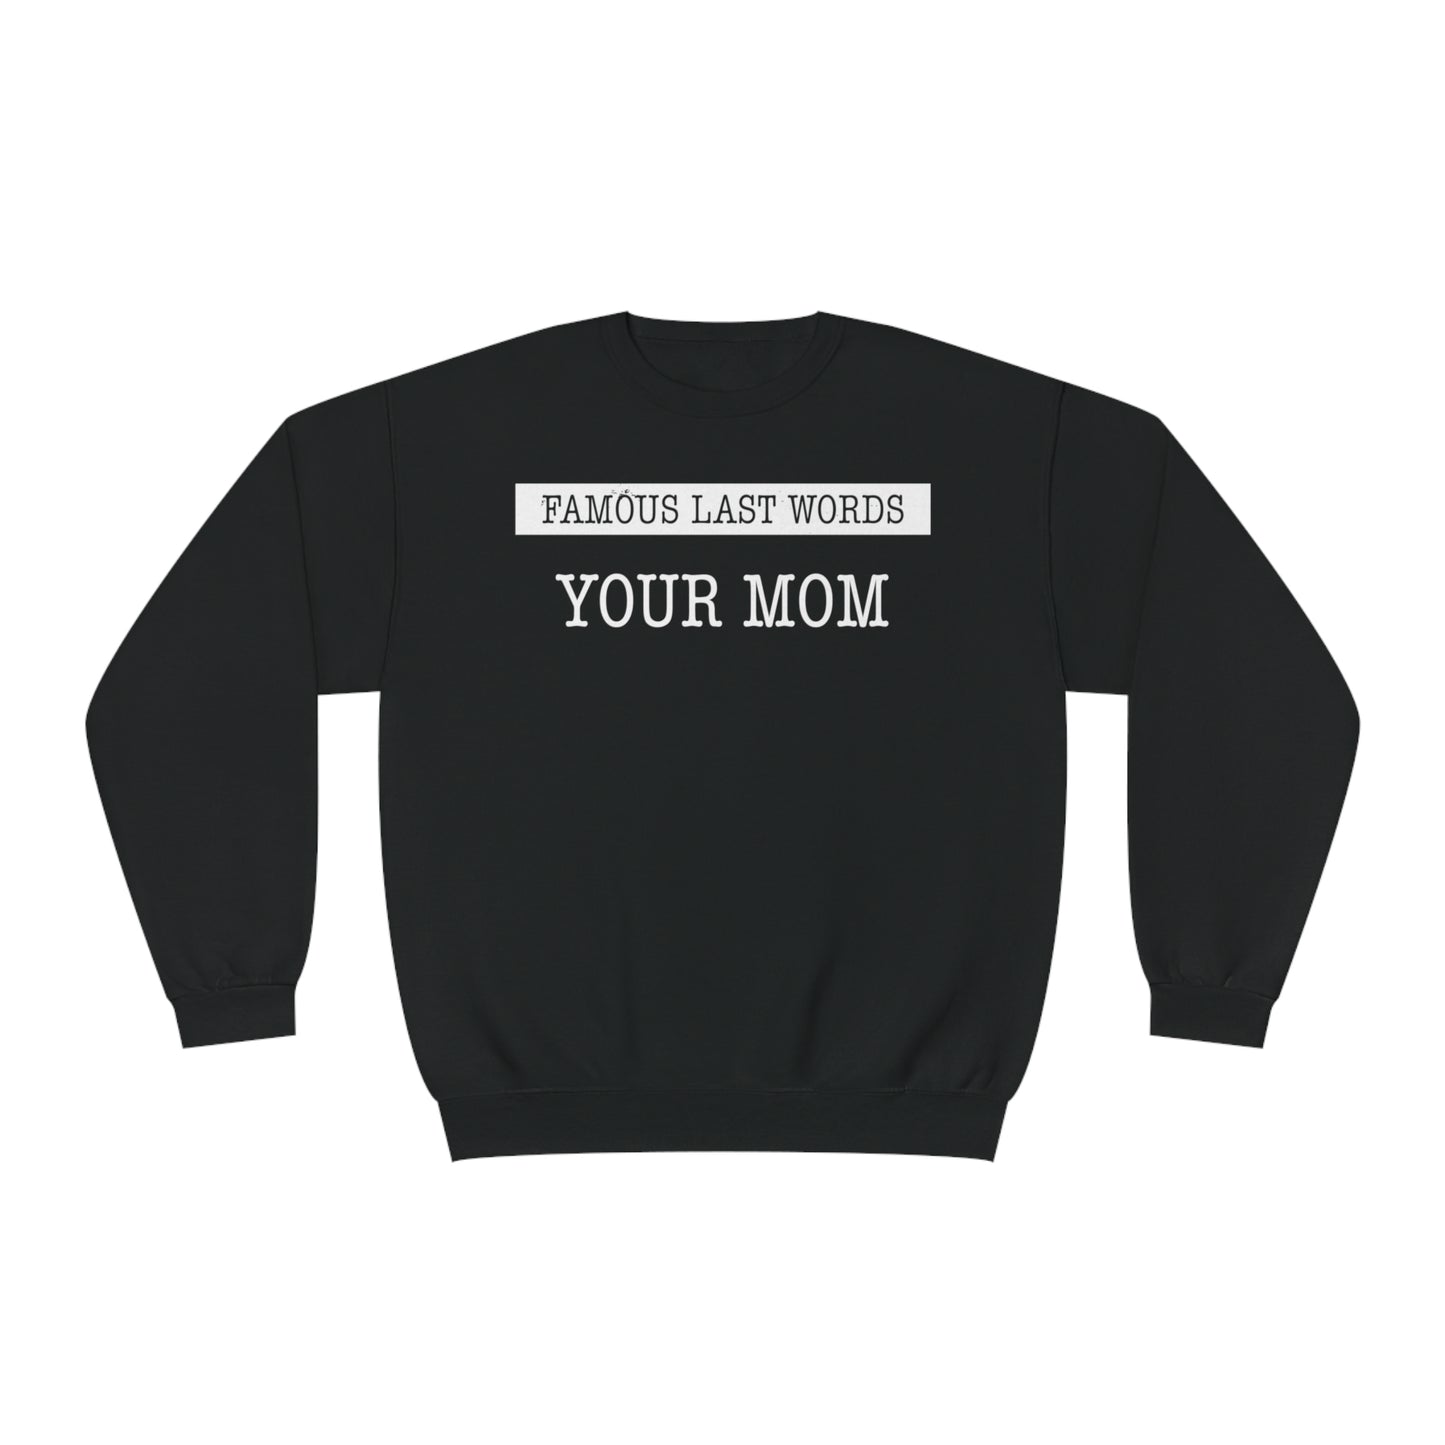 FLW "Your Mom" Sweatshirt